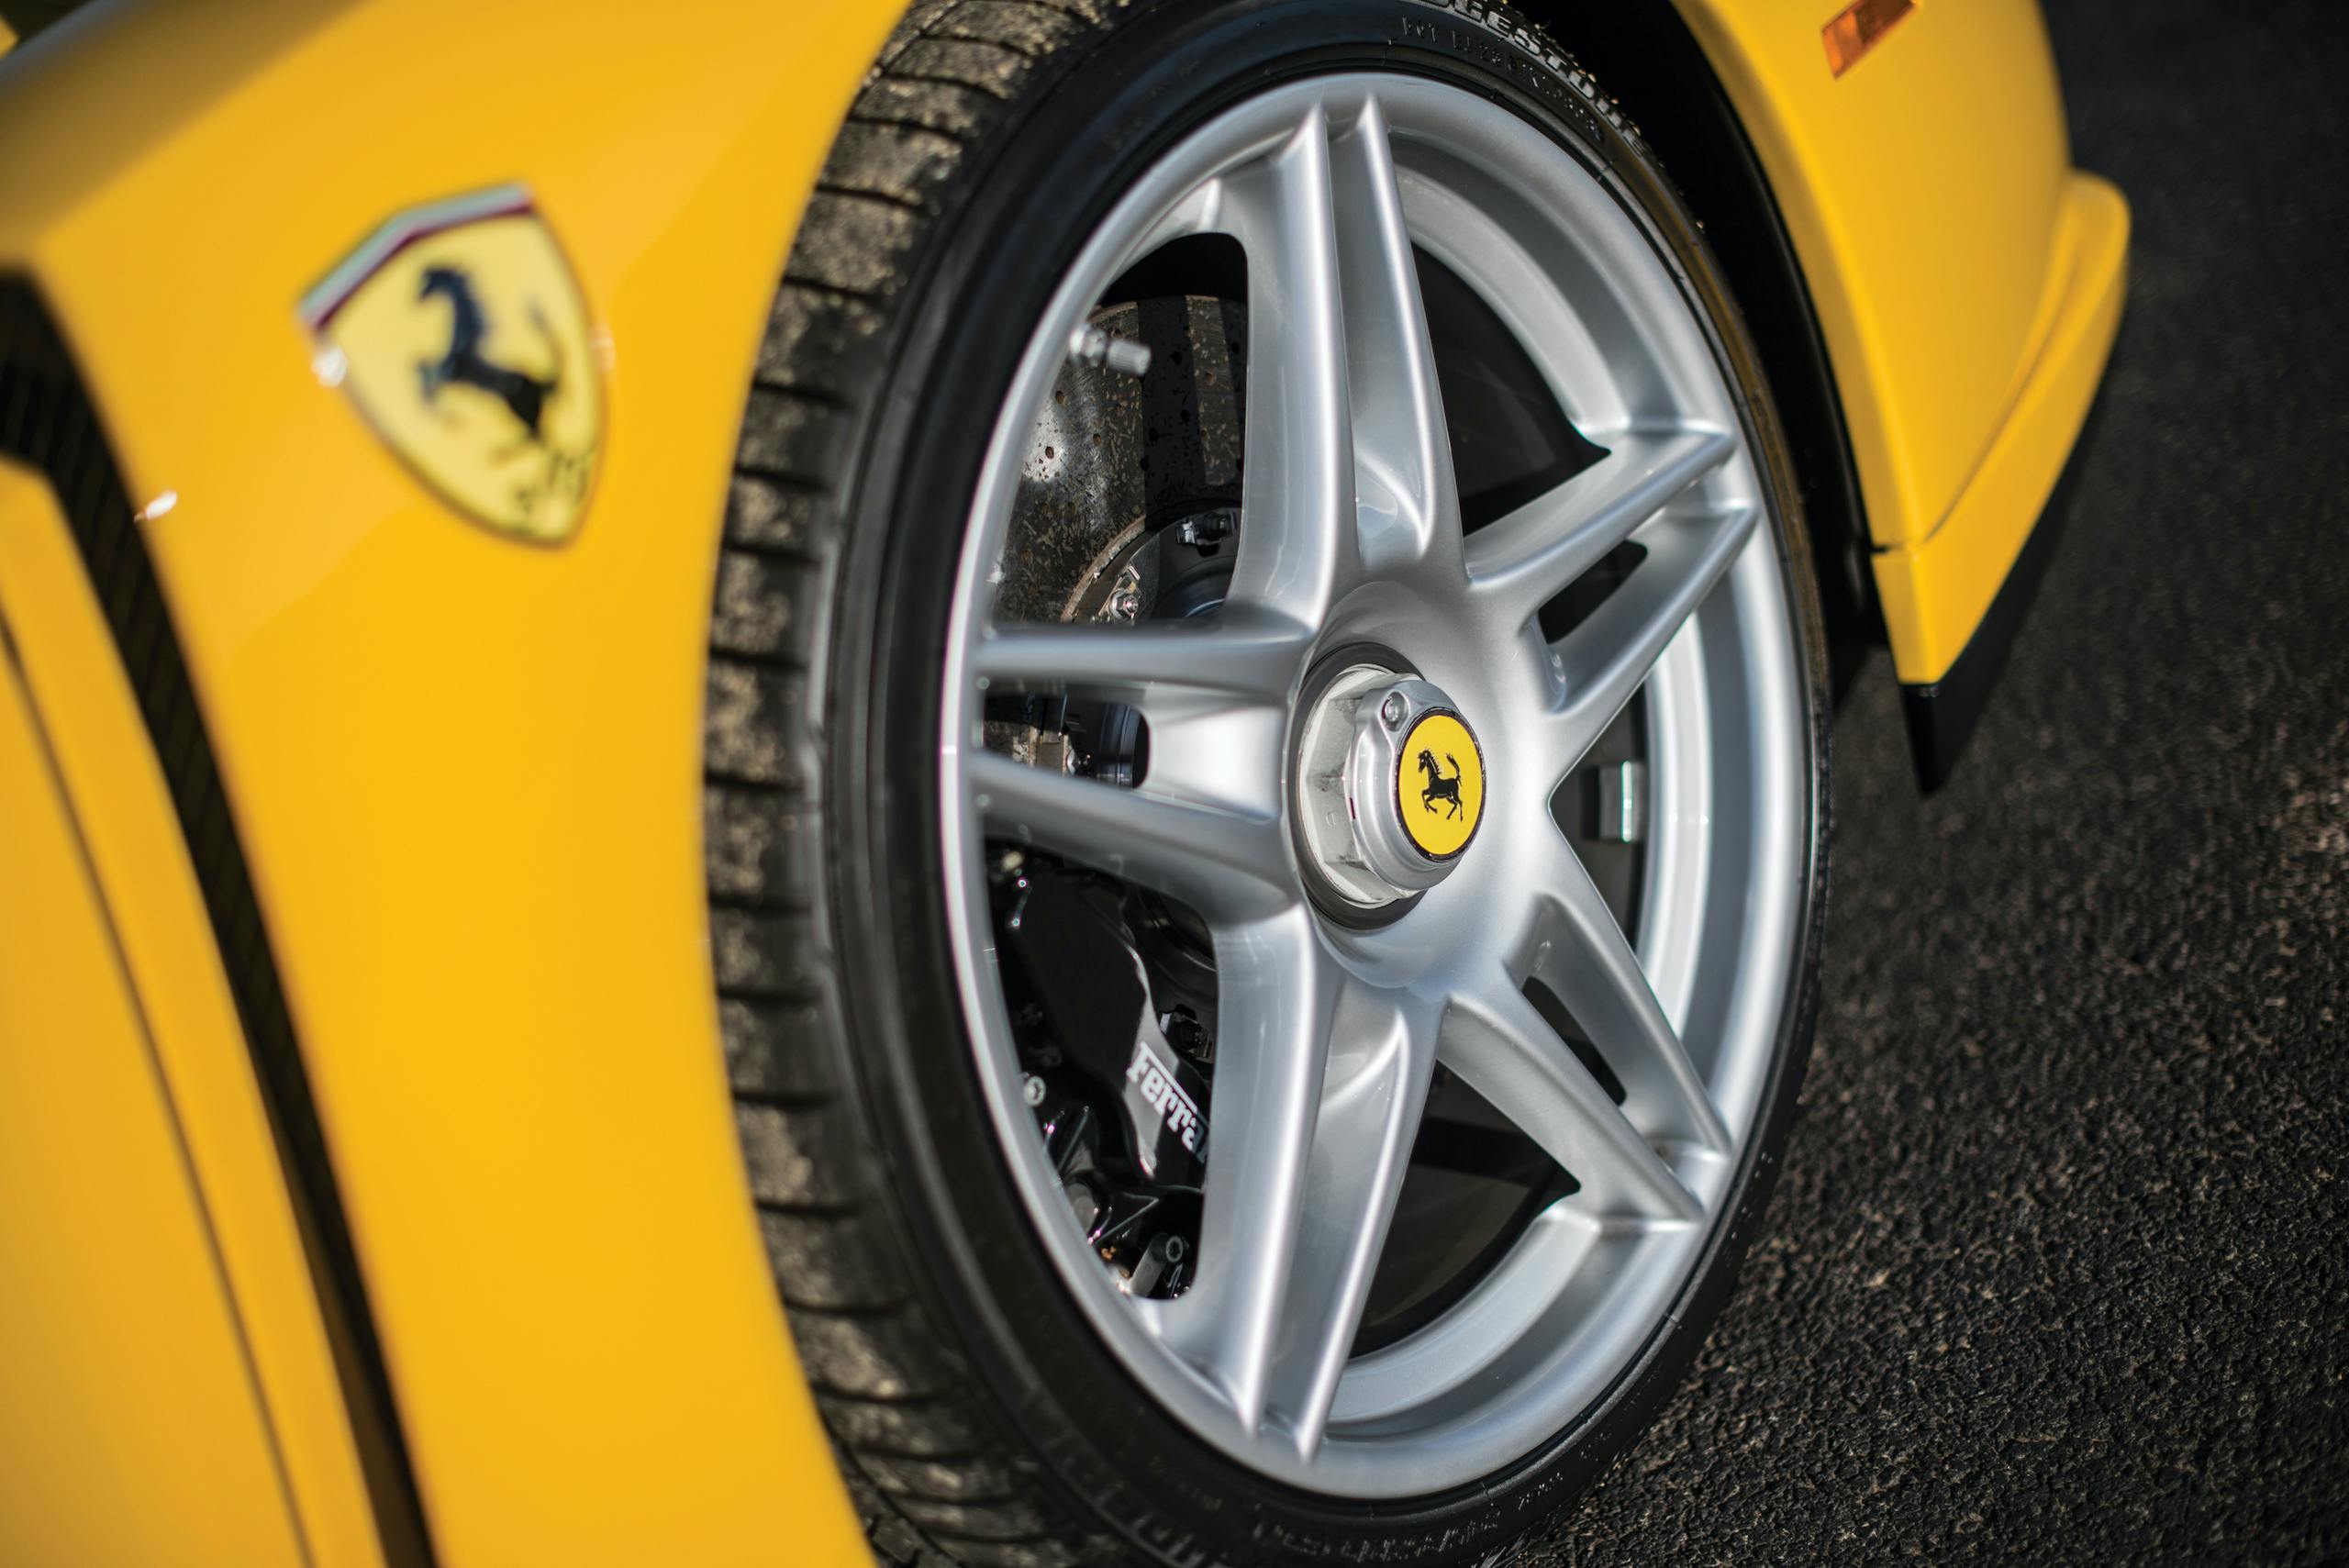 2002 Ferrari Enzo wheel detail